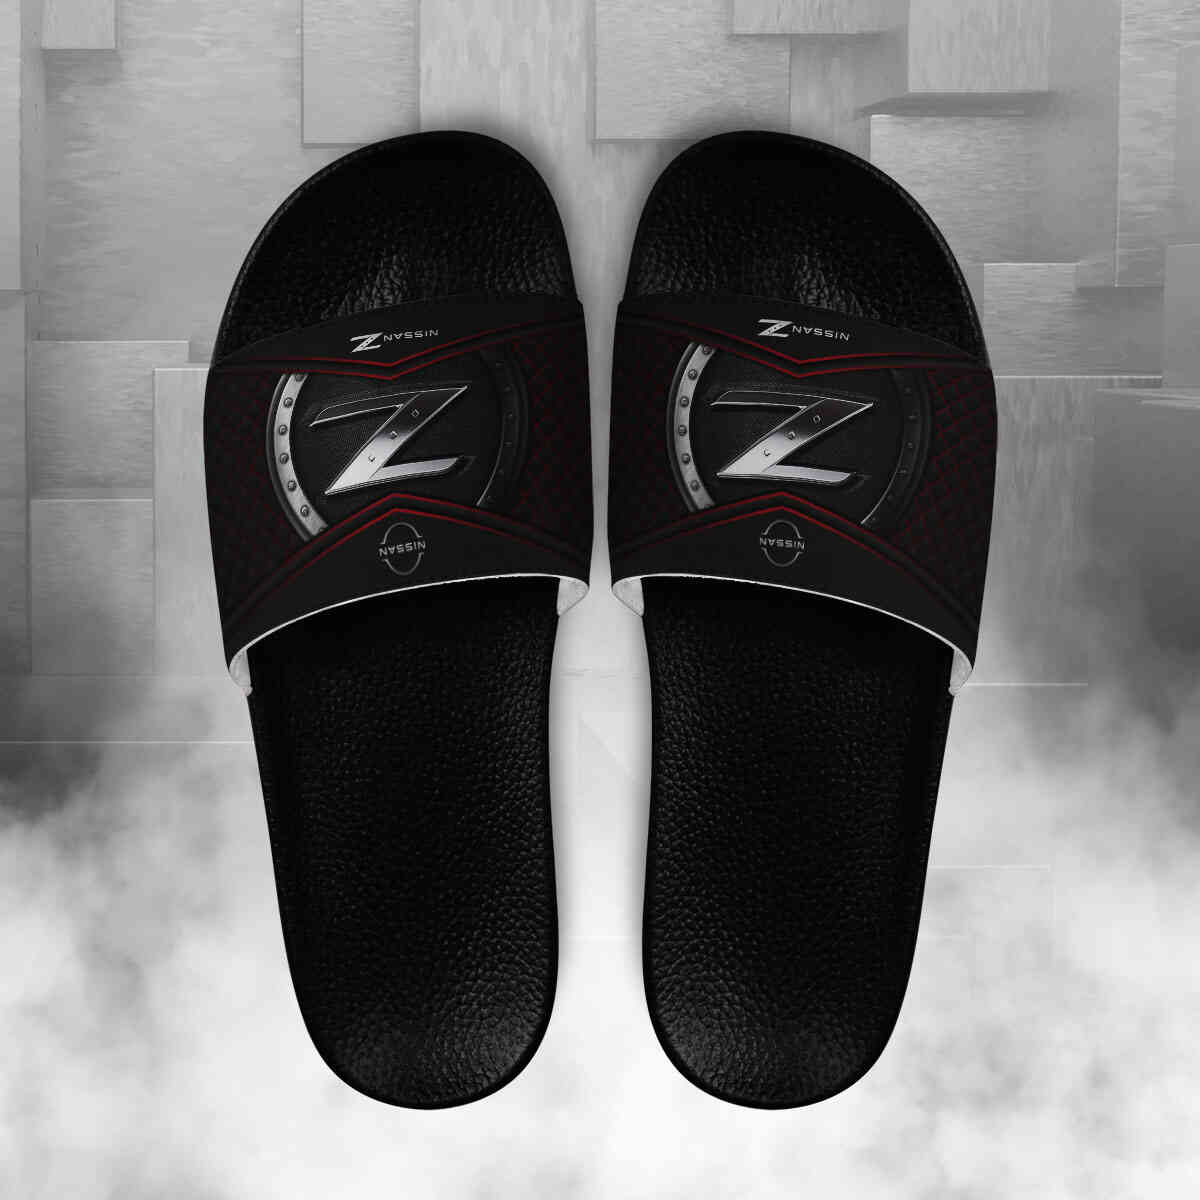 Z-car Slide Sandals